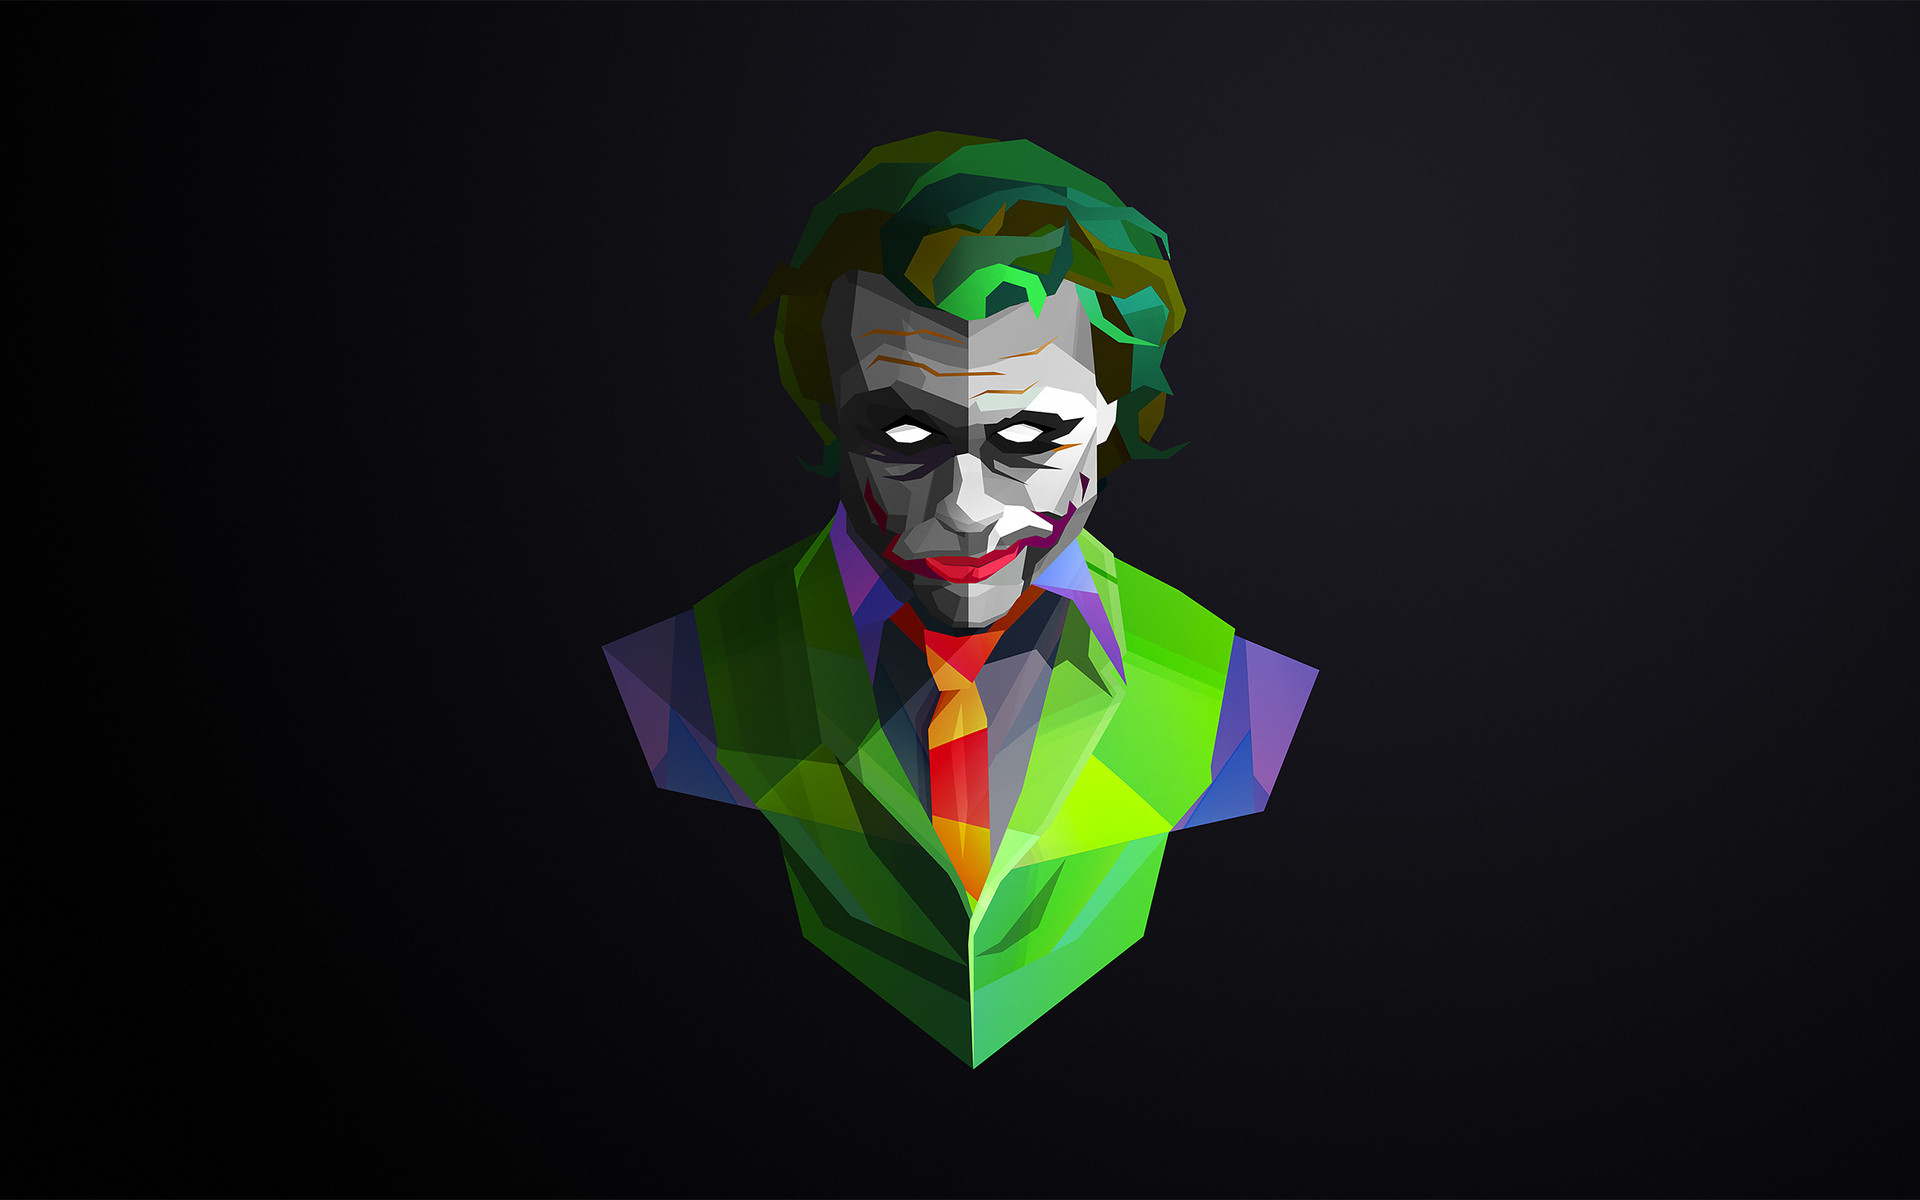 Joker justin maller image